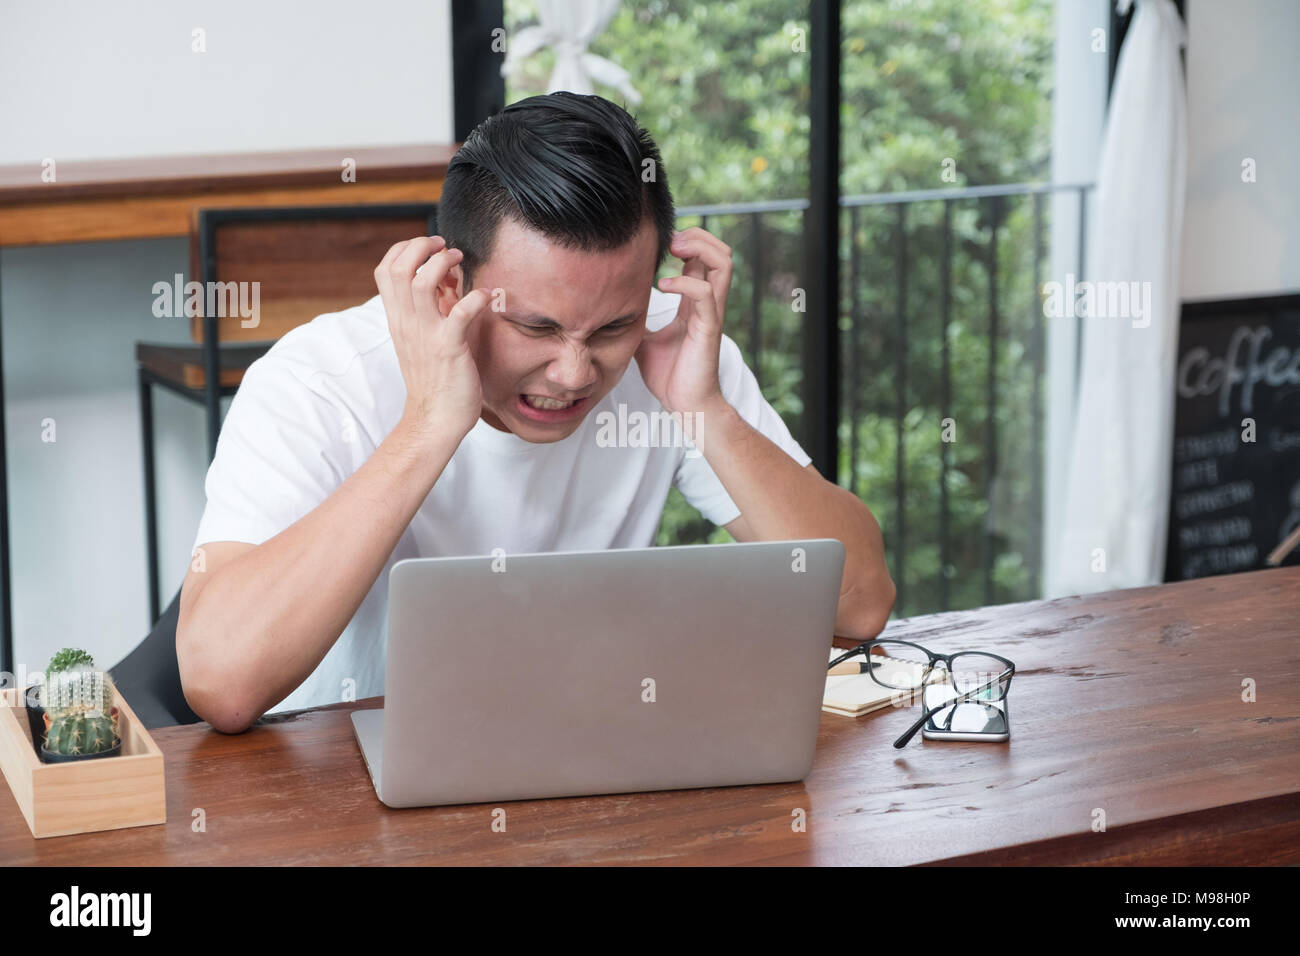 Asien legerer Mann Abdeckung Gesicht mit der Hand von der Arbeit umgekippt Vor laptop computer im Coffee Shop, Stress Emotionen Konzept, Arbeiten im Büro, arbeiten in hom Stockfoto